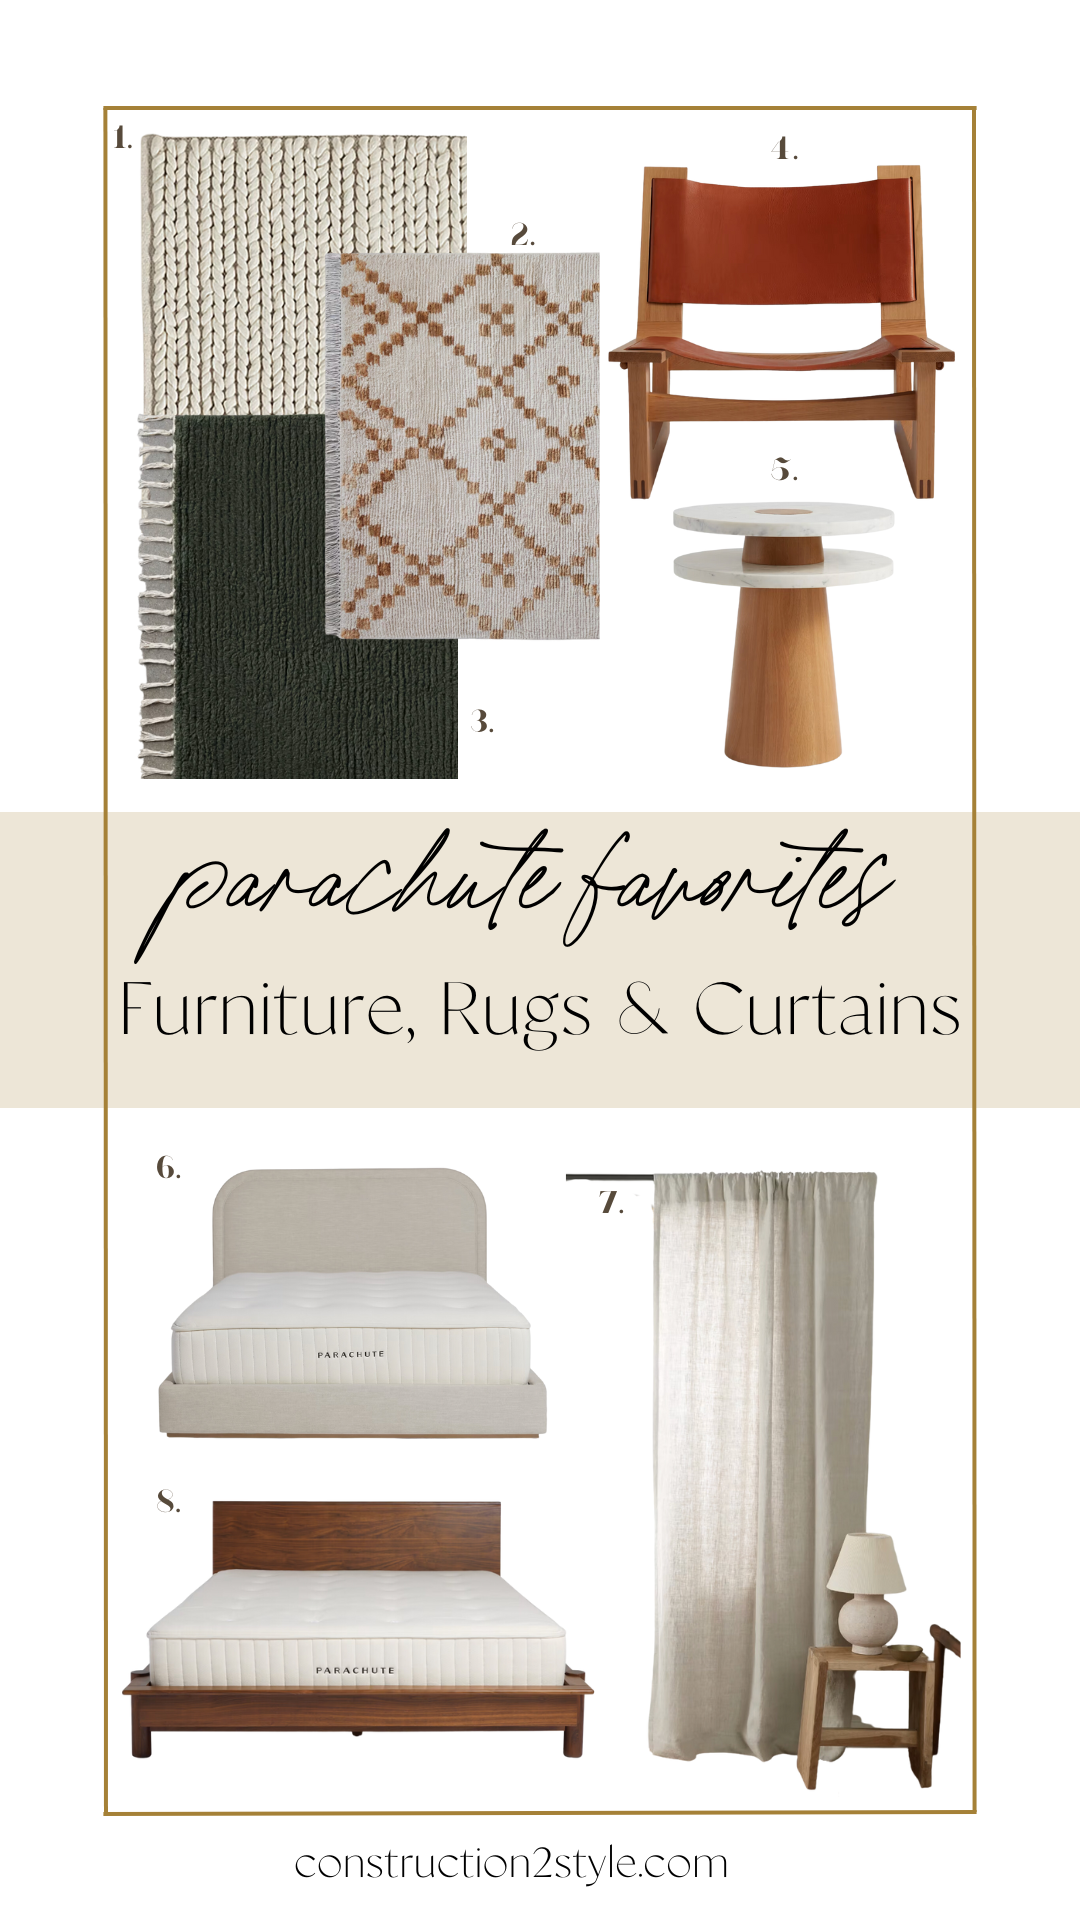 Parachute Furniture, Rugs, Curtains